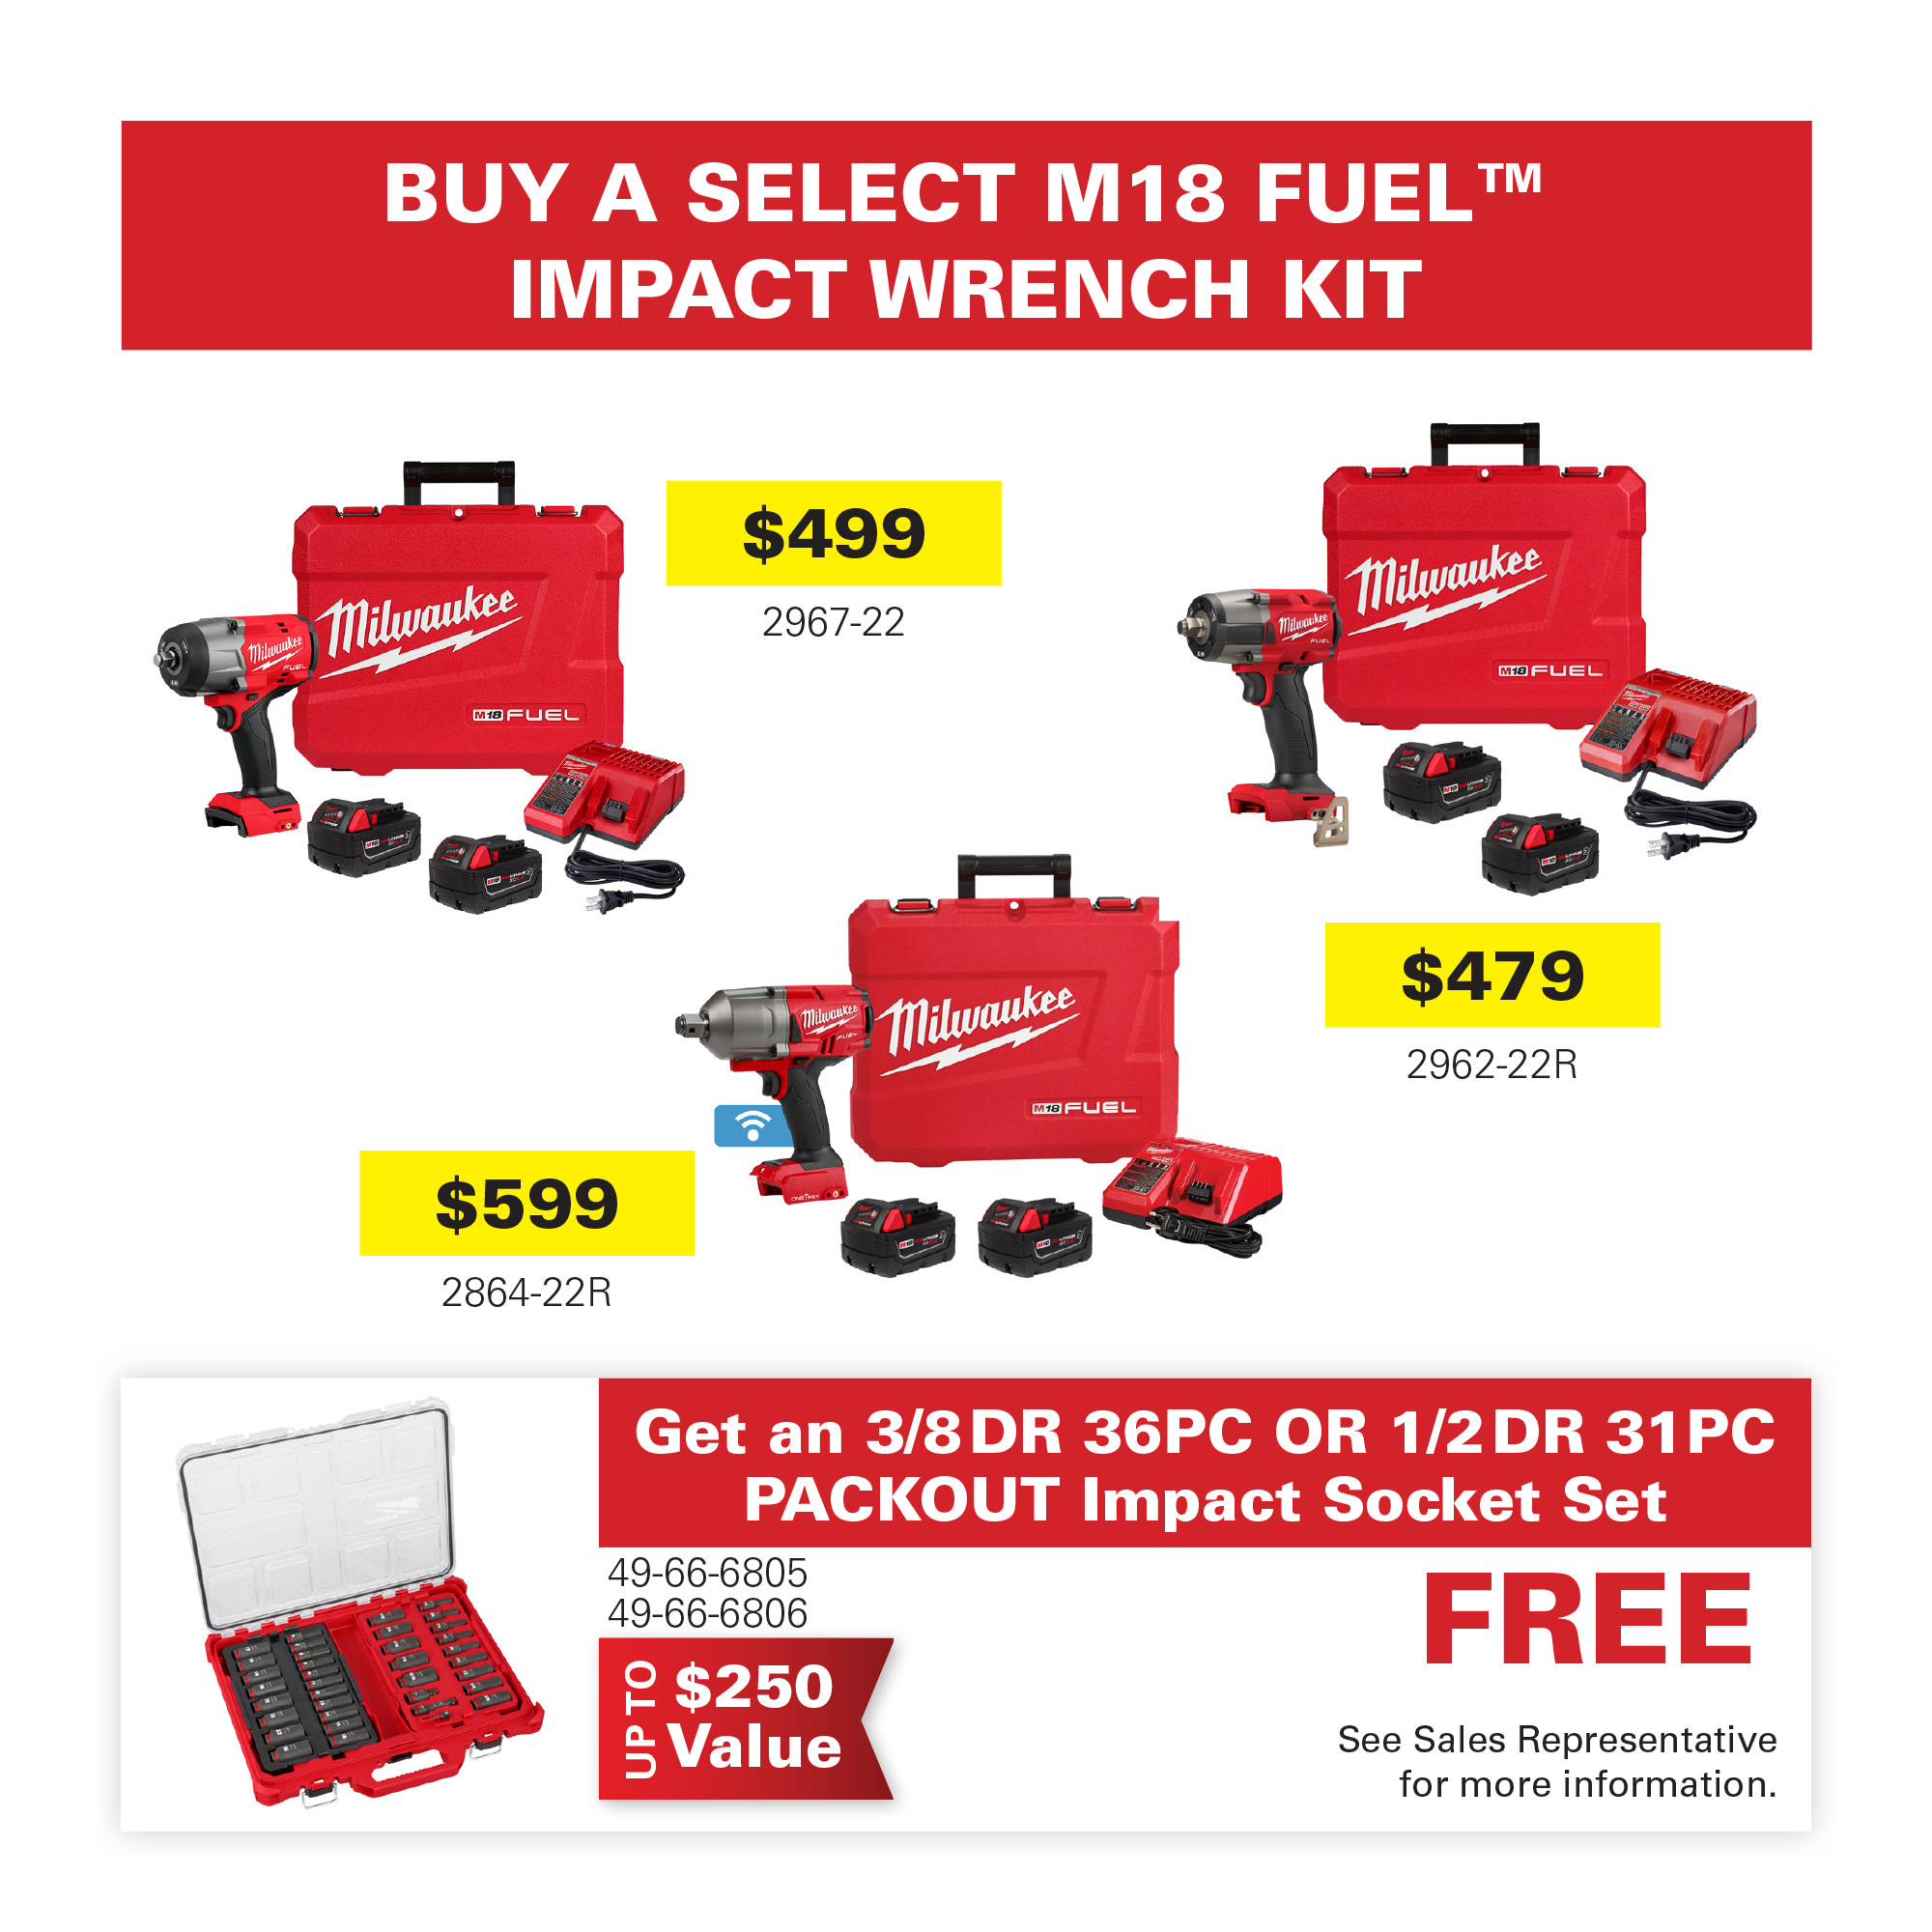 Milwaukee M18 Fuel Impact Wrench Kit Promo